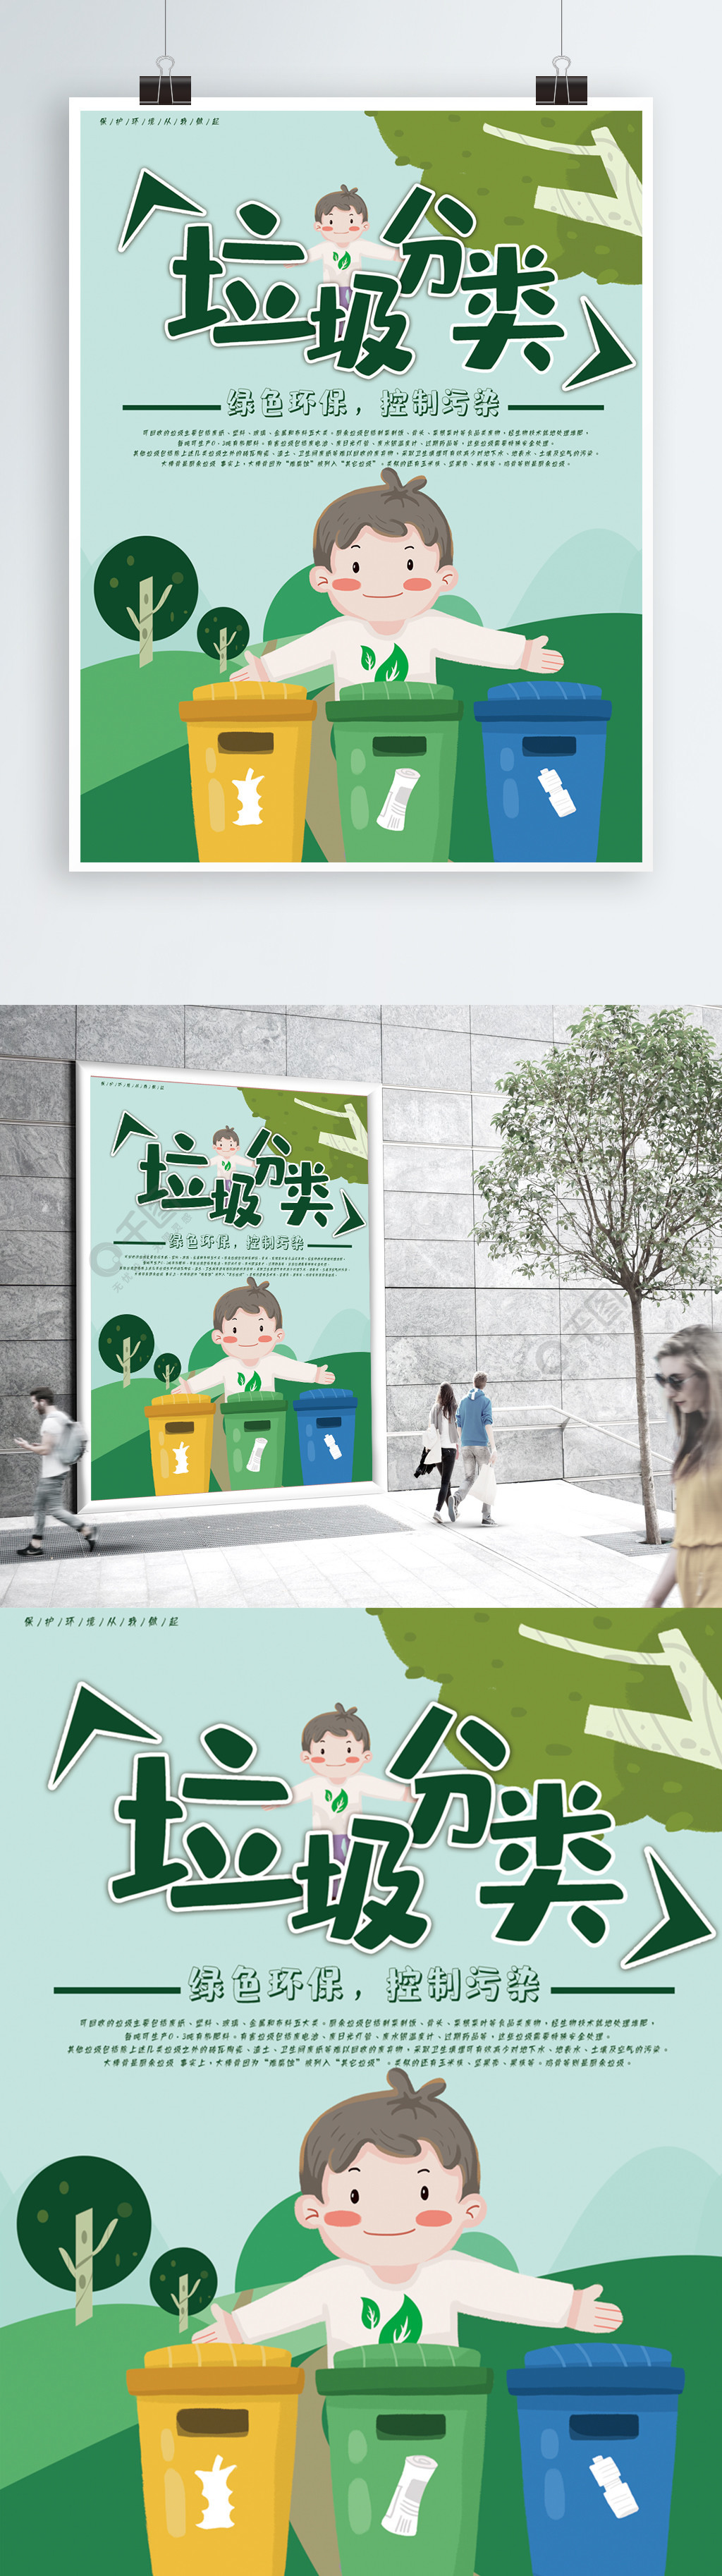 垃圾分类绿色环保健康公益海报2年前发布